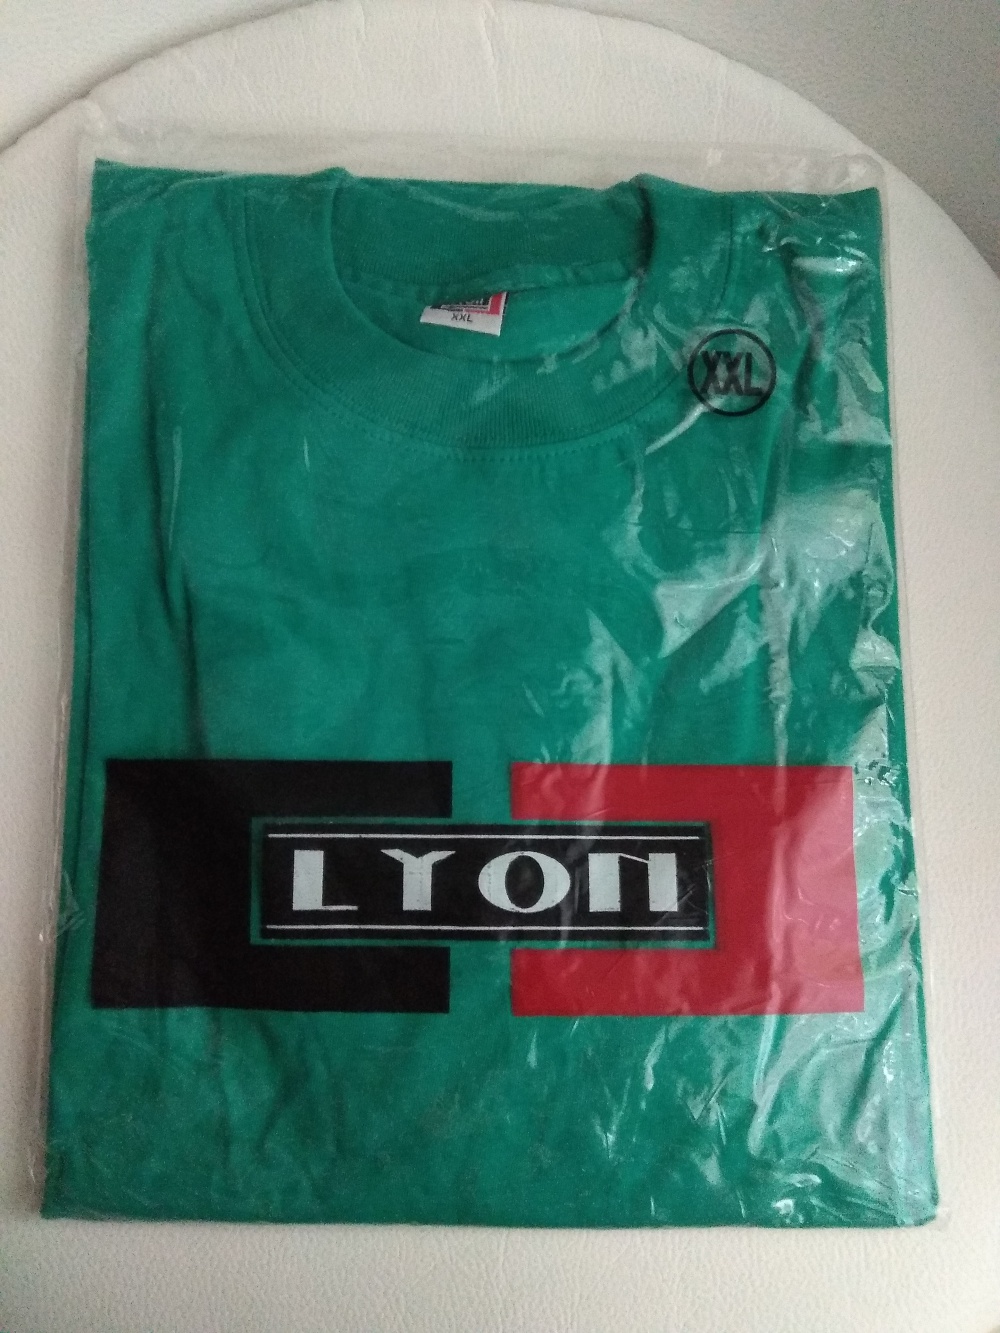 Футболка LYON, зелено-бирюзовая, размер XXL = 54-56+ (рос)